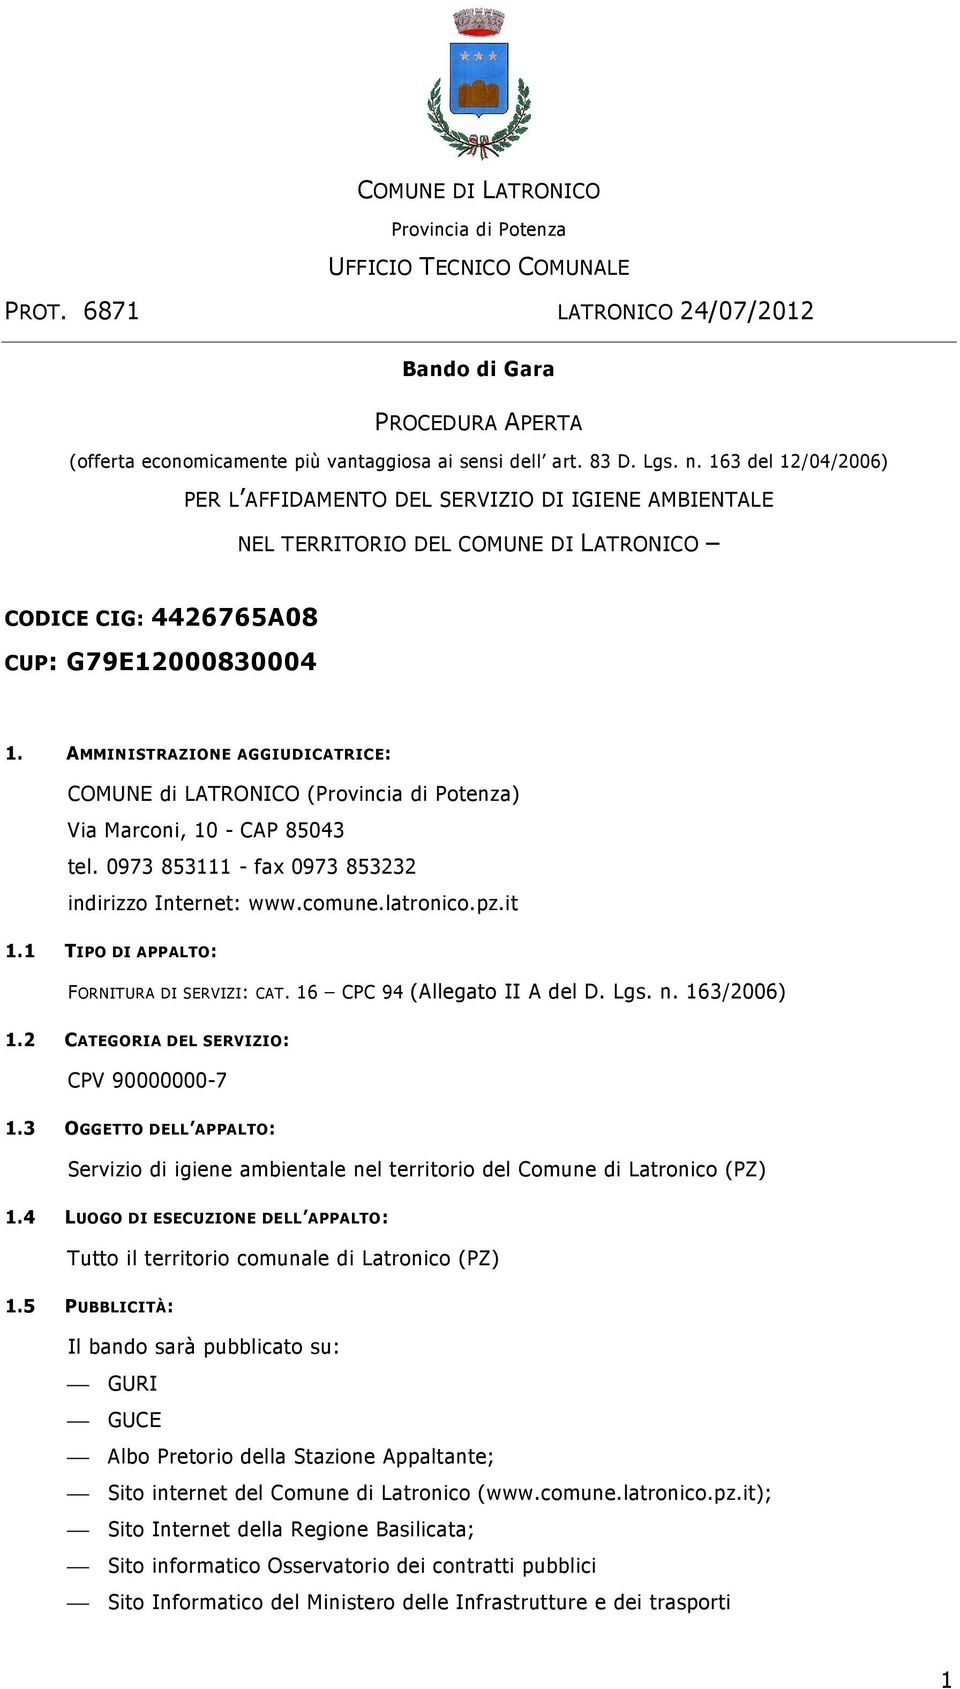 AMMINISTRAZIONE AGGIUDICATRICE: COMUNE di LATRONICO (Provincia di Potenza) Via Marconi, 10 - CAP 85043 tel. 0973 853111 - fax 0973 853232 indirizzo Internet: www.comune.latronico.pz.it 1.